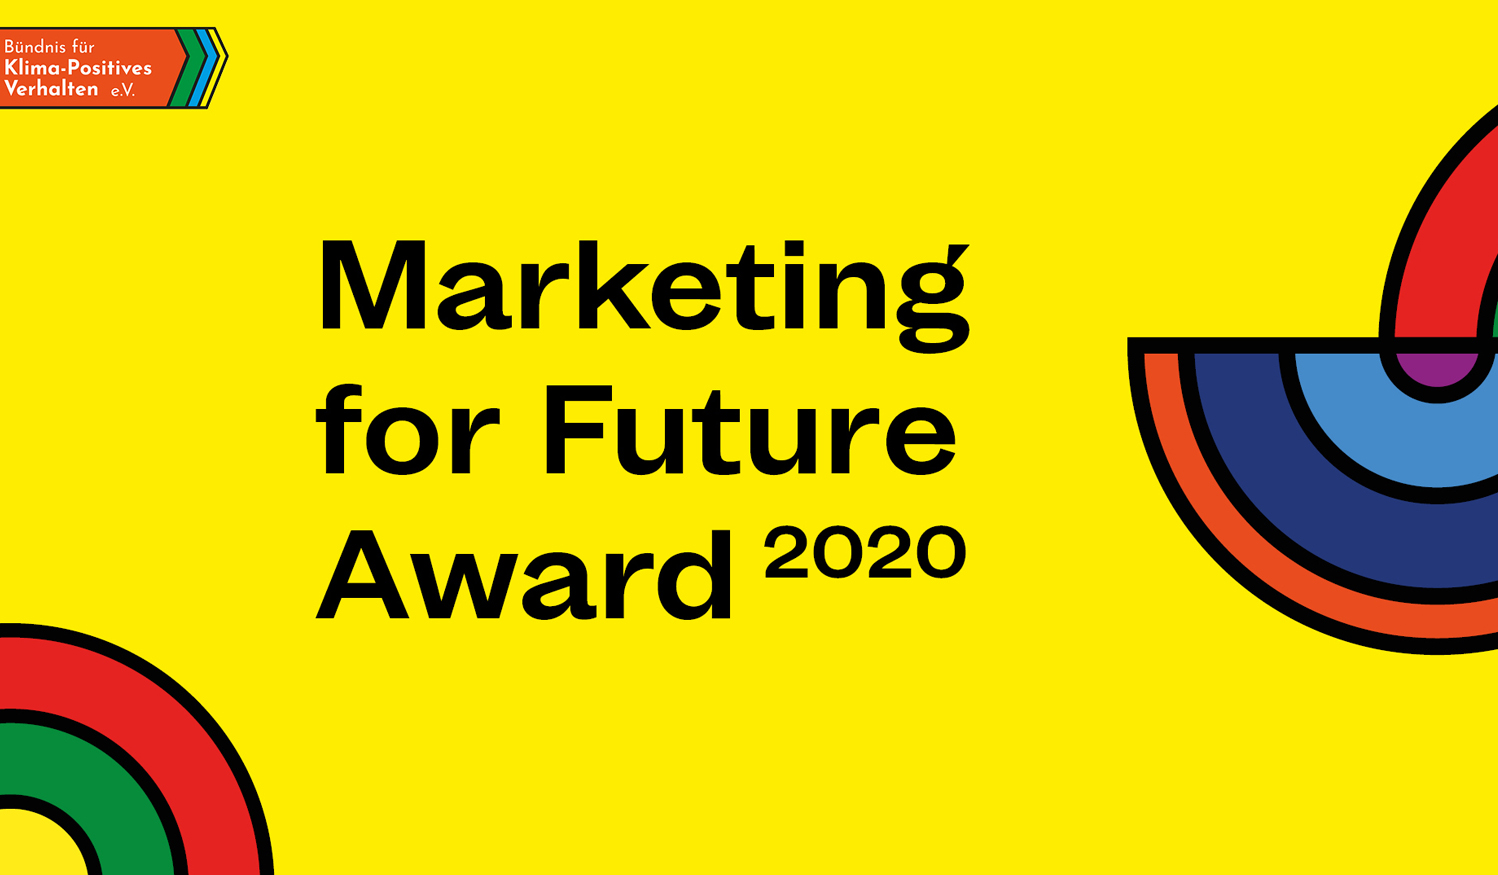 Das FLAD & FLAD Projekt Klima Arena wurde mit dem Marketing for Future Award 2020 ausgezeichnet